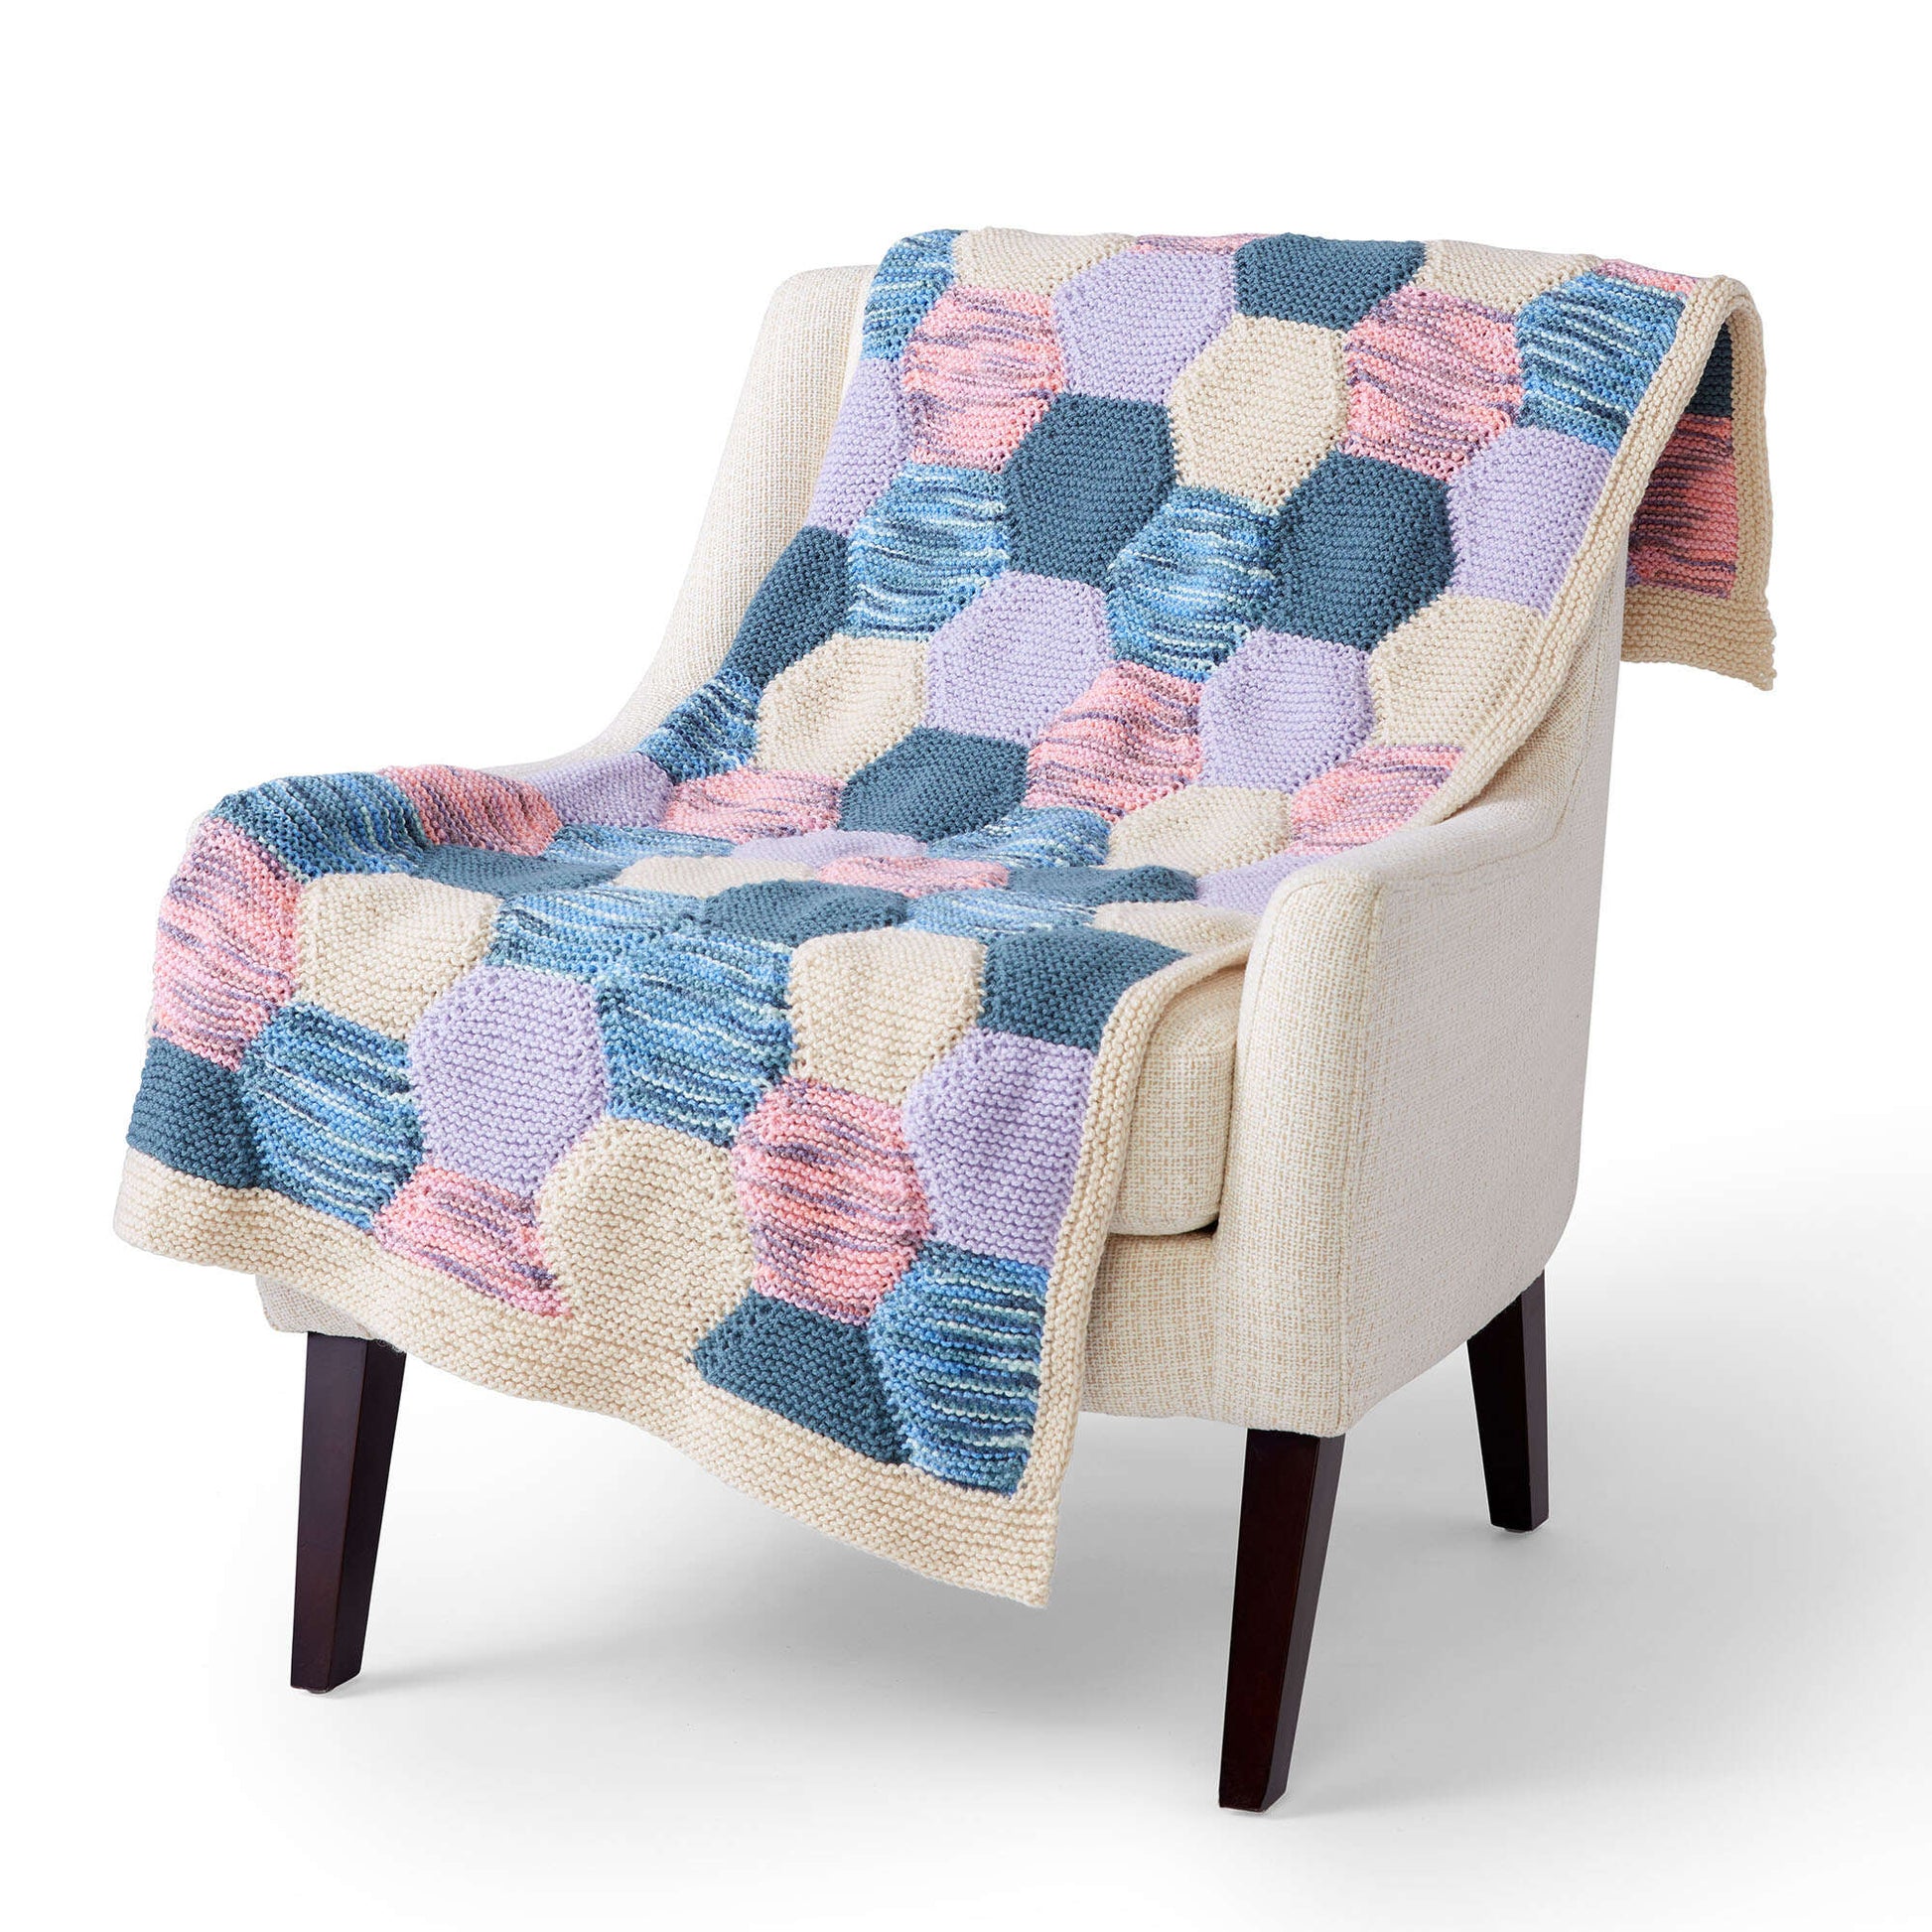 Free Caron Spring Quilt Knit Blanket Pattern